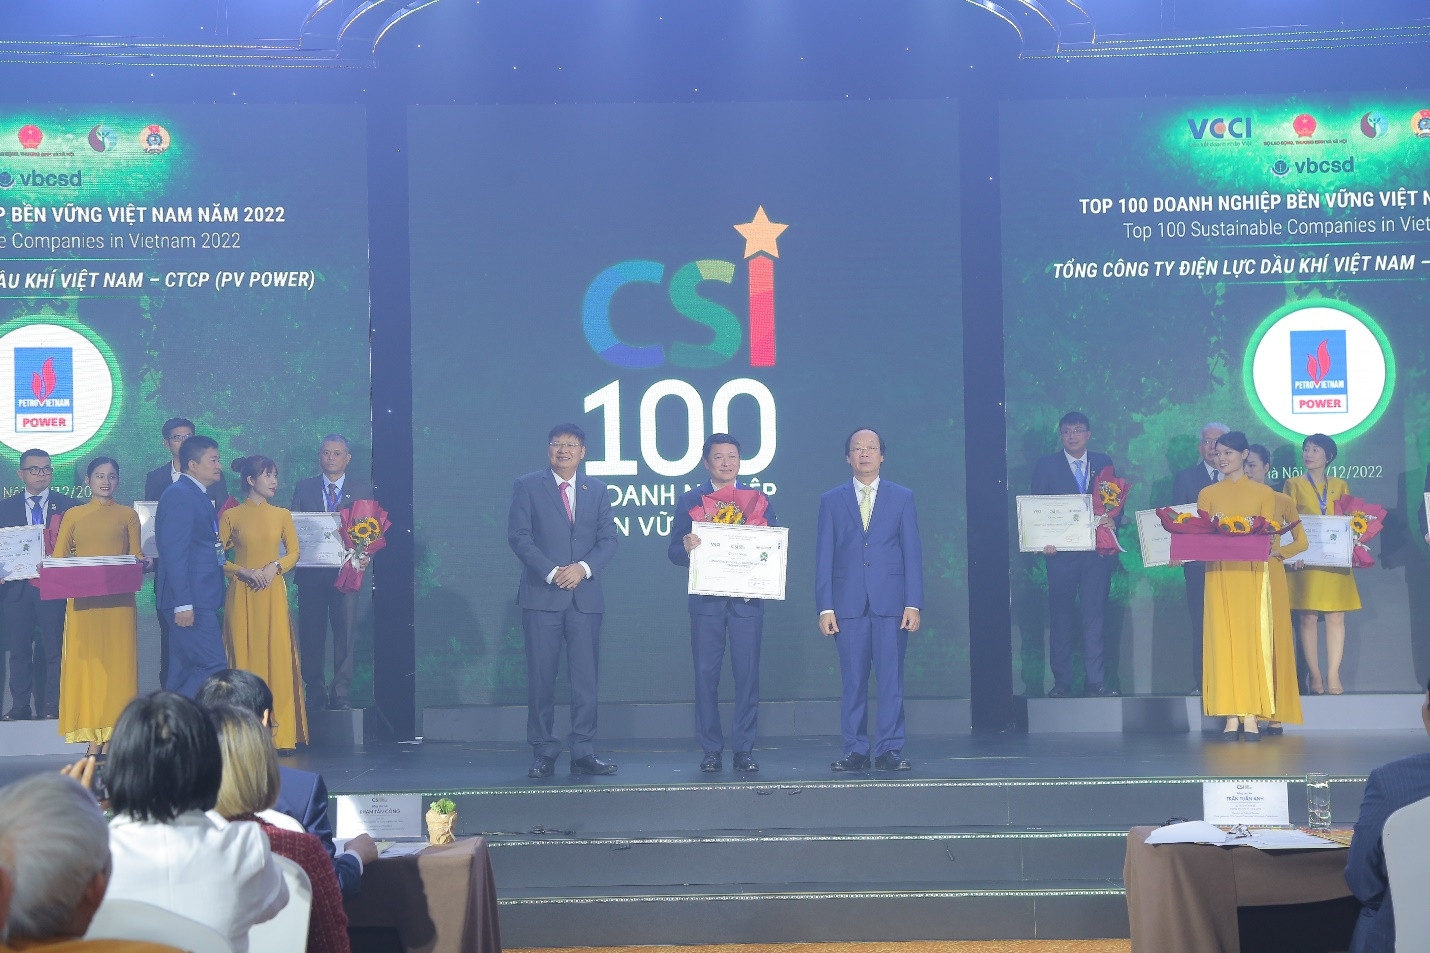 Ông Nguyễn Duy Giang, Phó Tổng giám đốc PV Power nhận vinh danh Top 100 doanh nghiệp bền vững Việt Nam năm 2022.